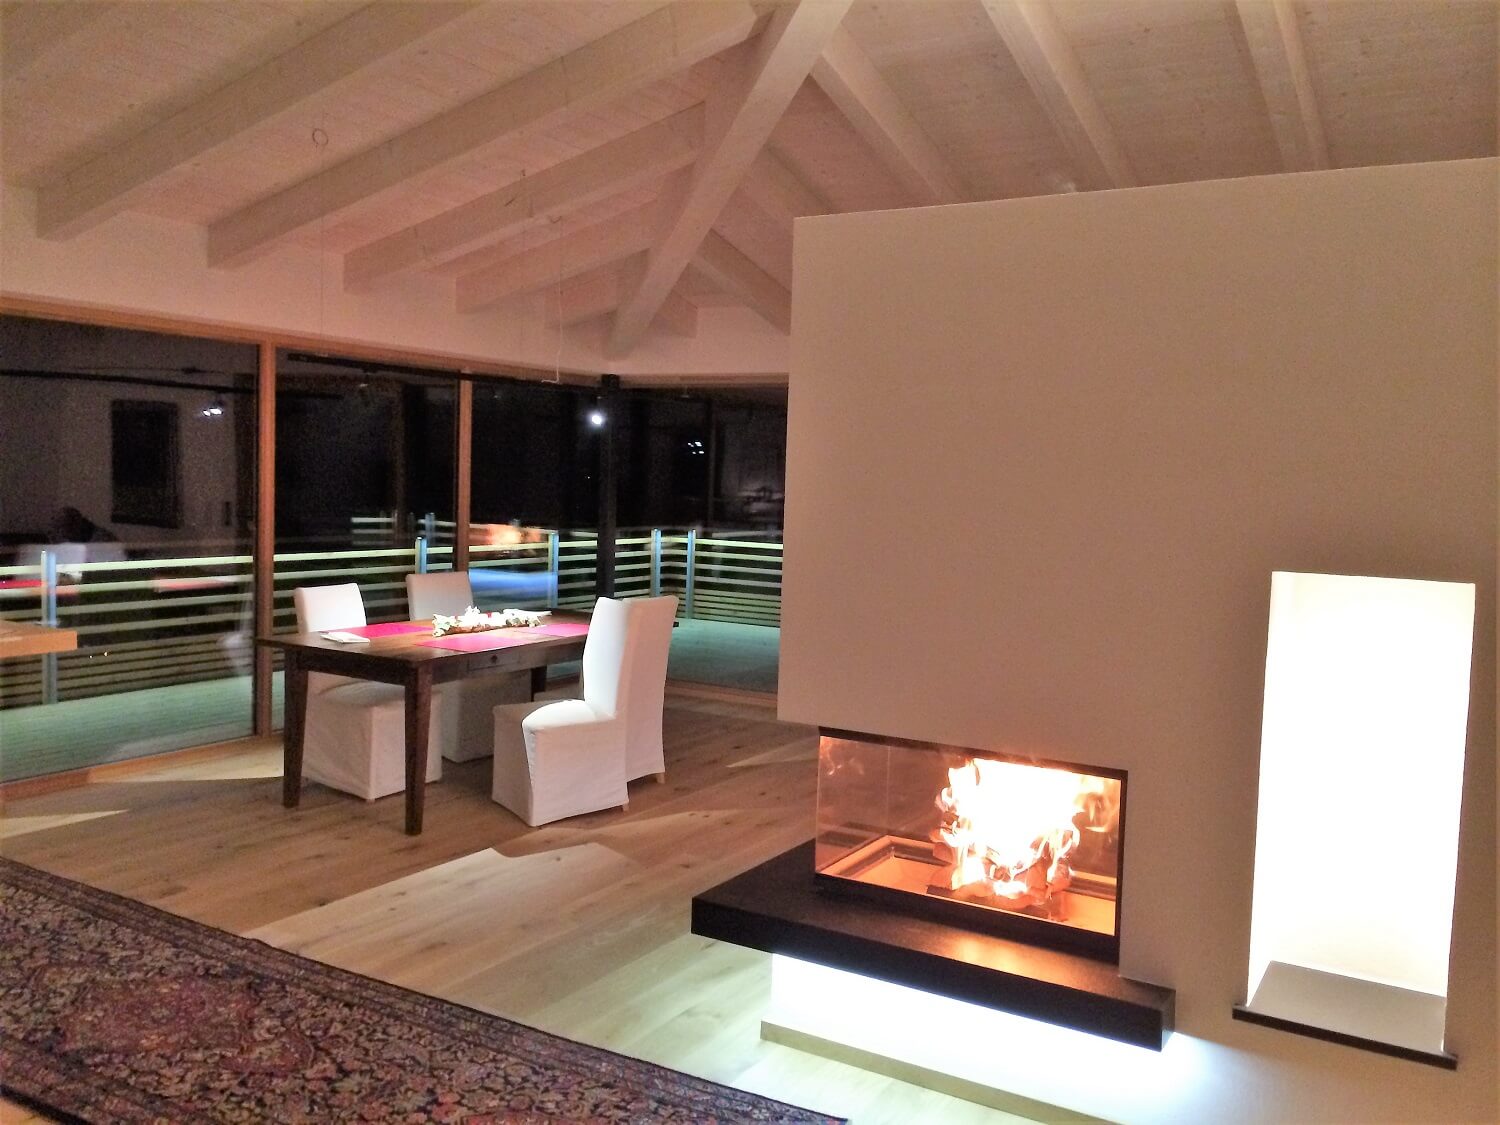 Moderner dreiseitiger Feuertisch mit Ledbeleuchtung als Raumteiler